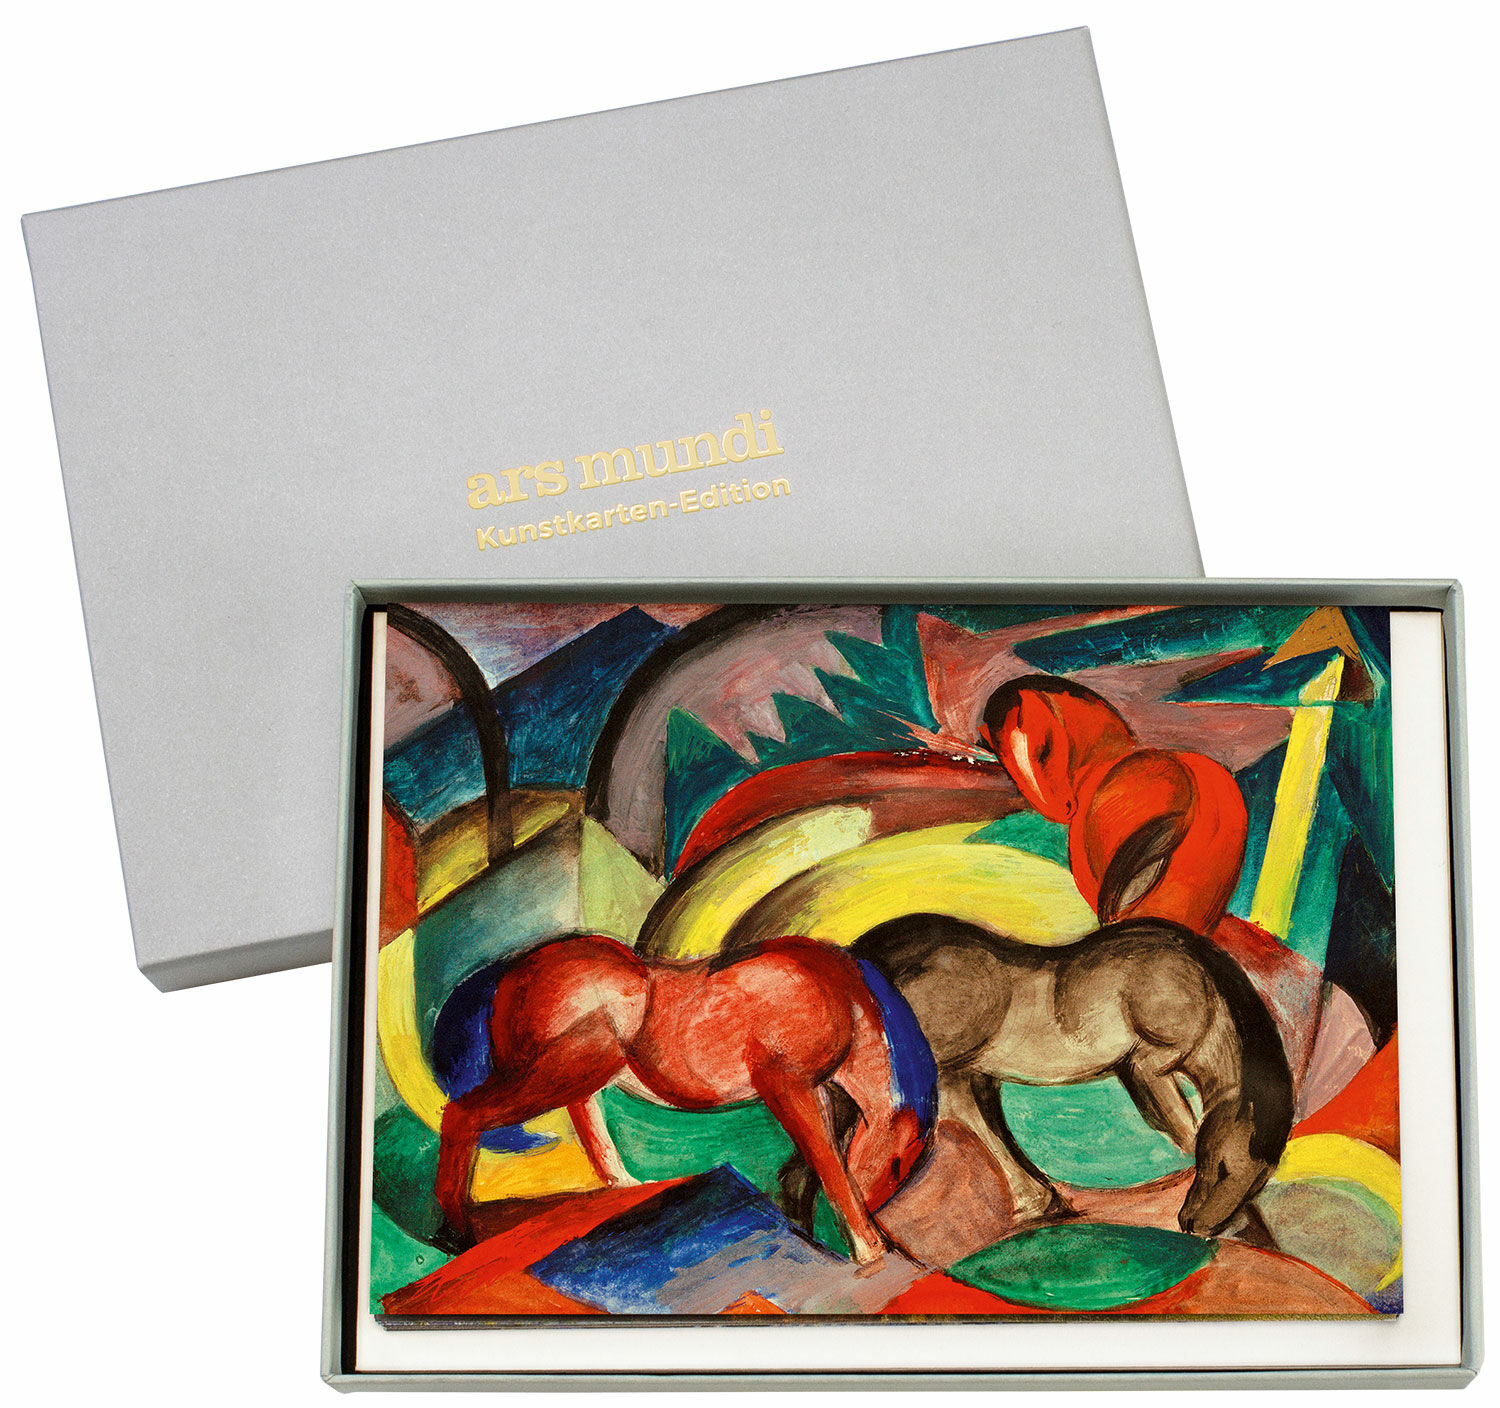 Art cards edition "Blauer Reiter", set of 9